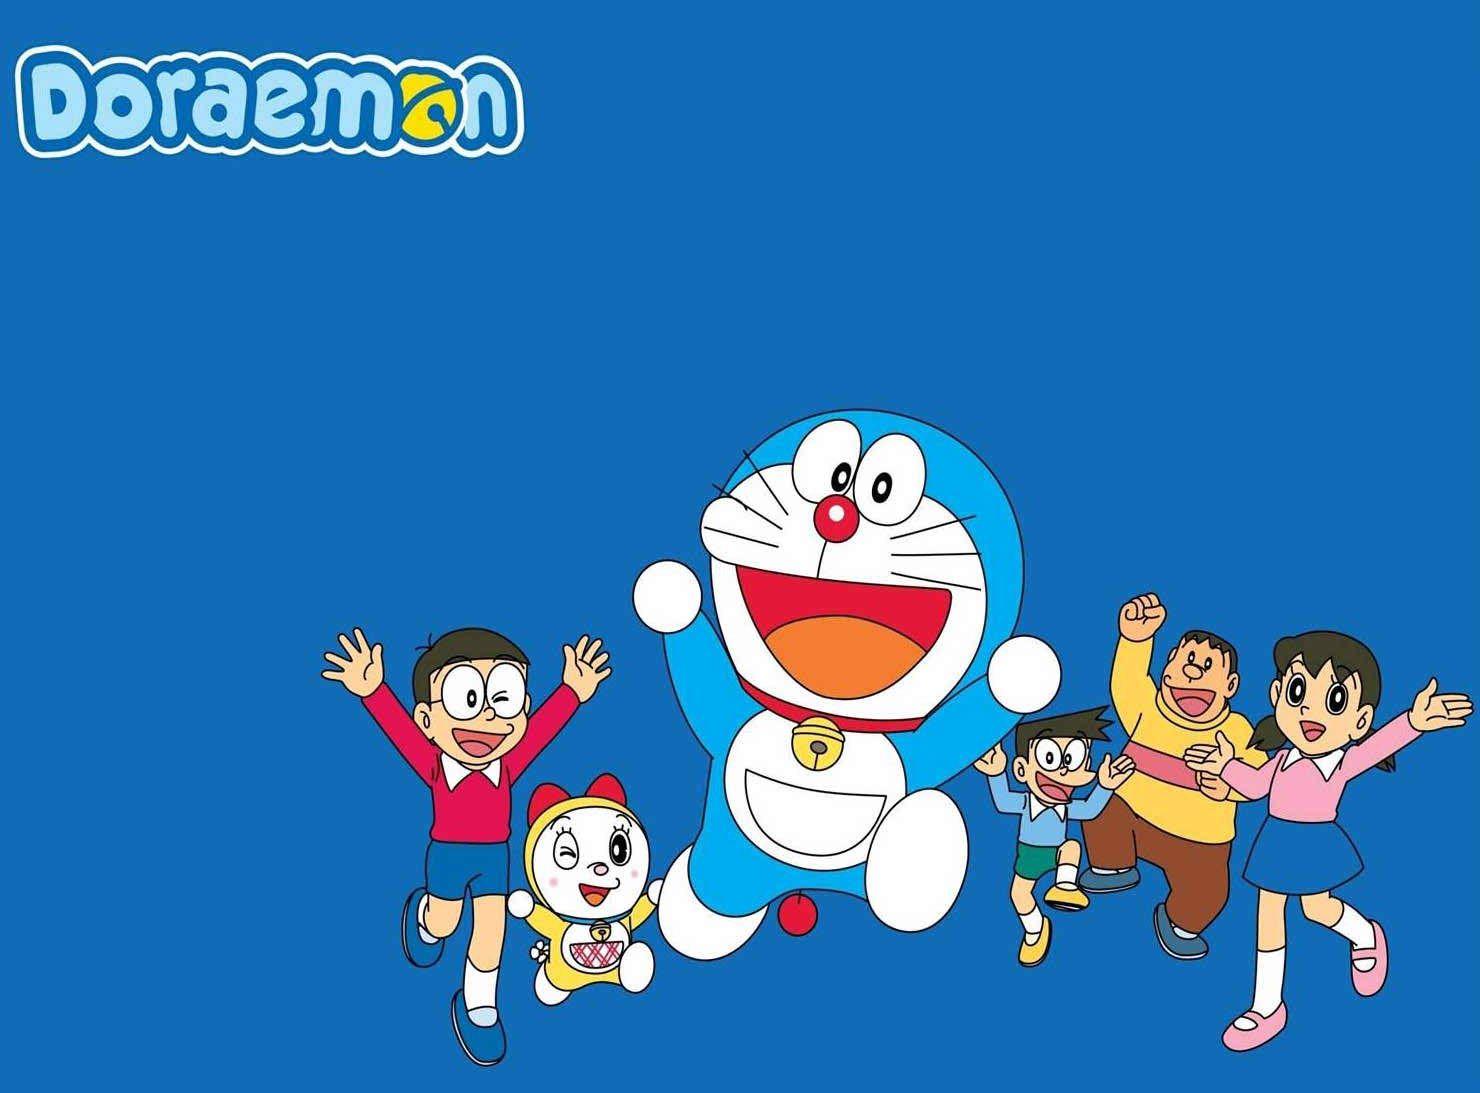 Những câu chuyện đầy màu sắc và thú vị về chú mèo máy Doraemon luôn thu hút sự chú ý của các bạn trẻ với truyện tranh Doraemon. Với tình cảm và sự chân thật của nhân vật, bạn sẽ tìm thấy những giây phút thư giãn khi thưởng thức truyện tranh Doraemon. Hãy đến với trang web của chúng tôi để cùng khám phá thế giới Doraemon nào!